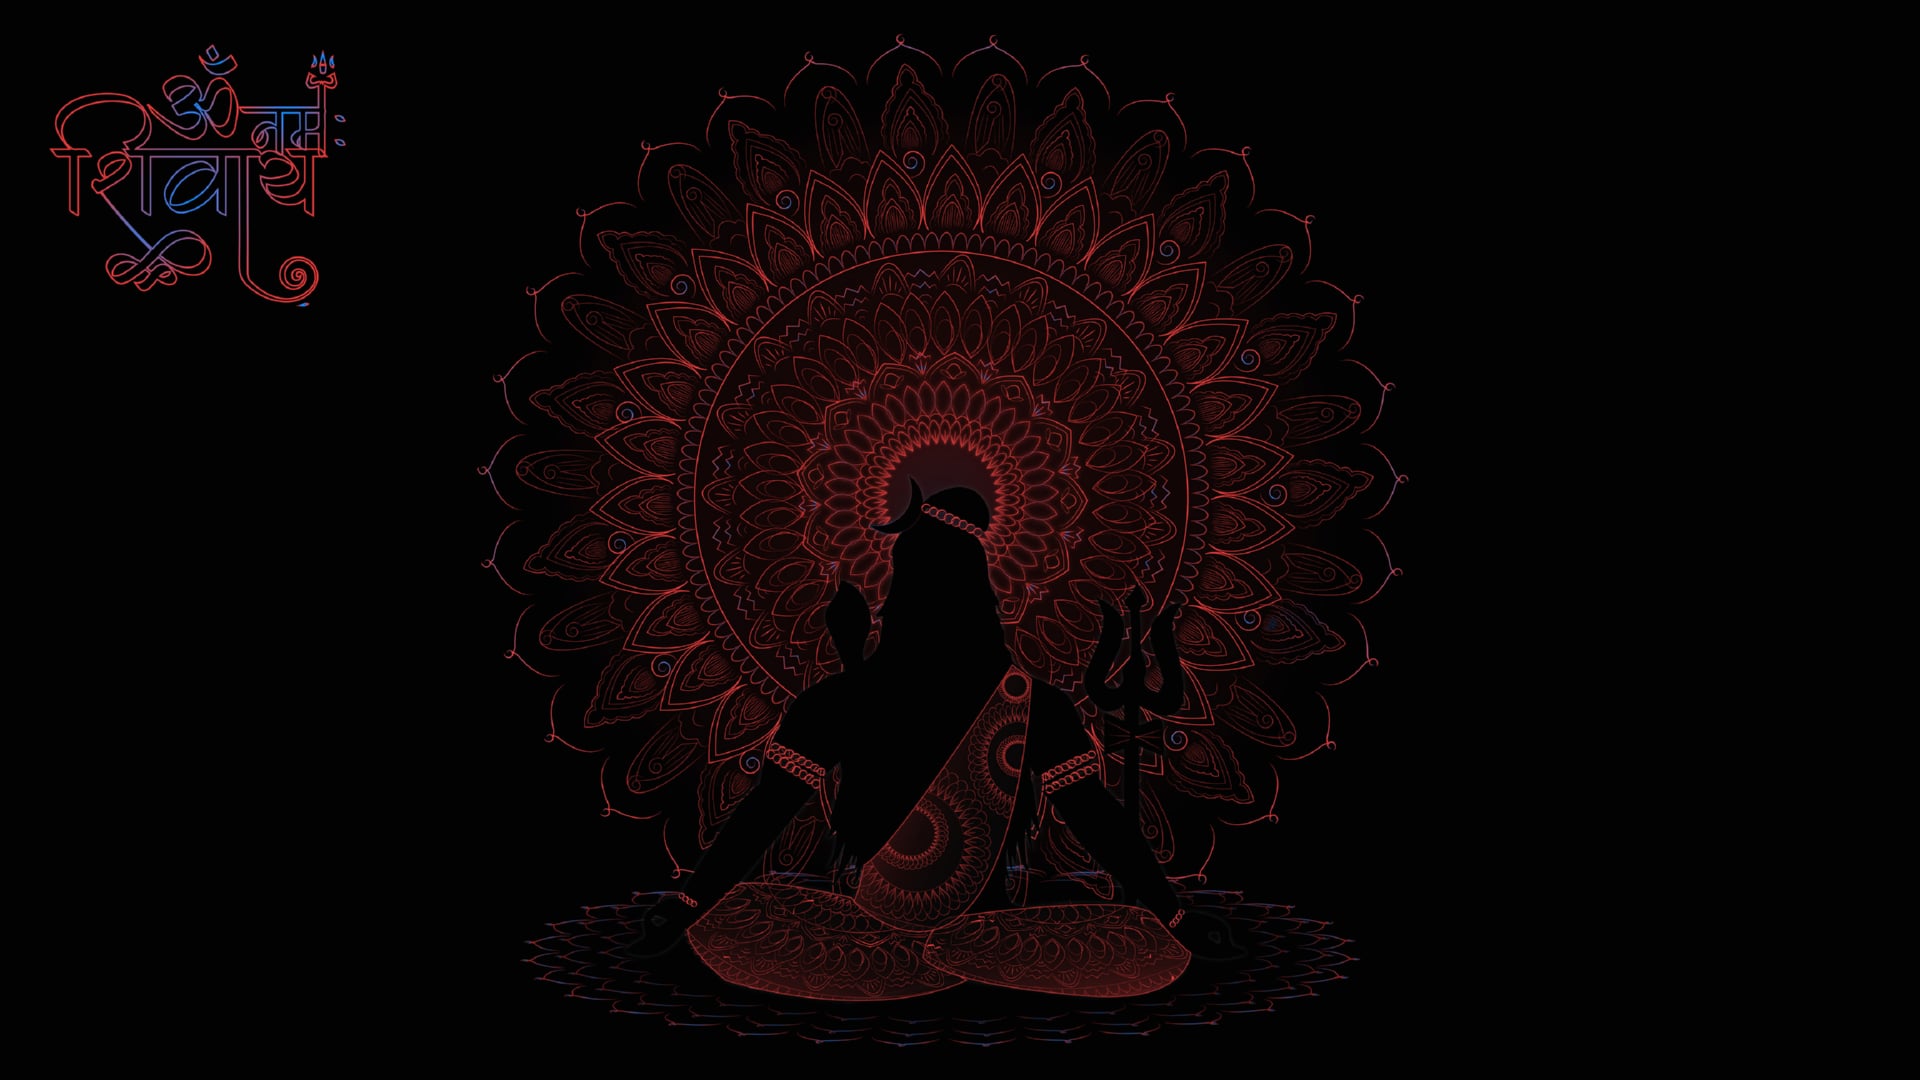 Digital Art Lord Shiva at 1024 x 1024 iPad size wallpapers HD quality